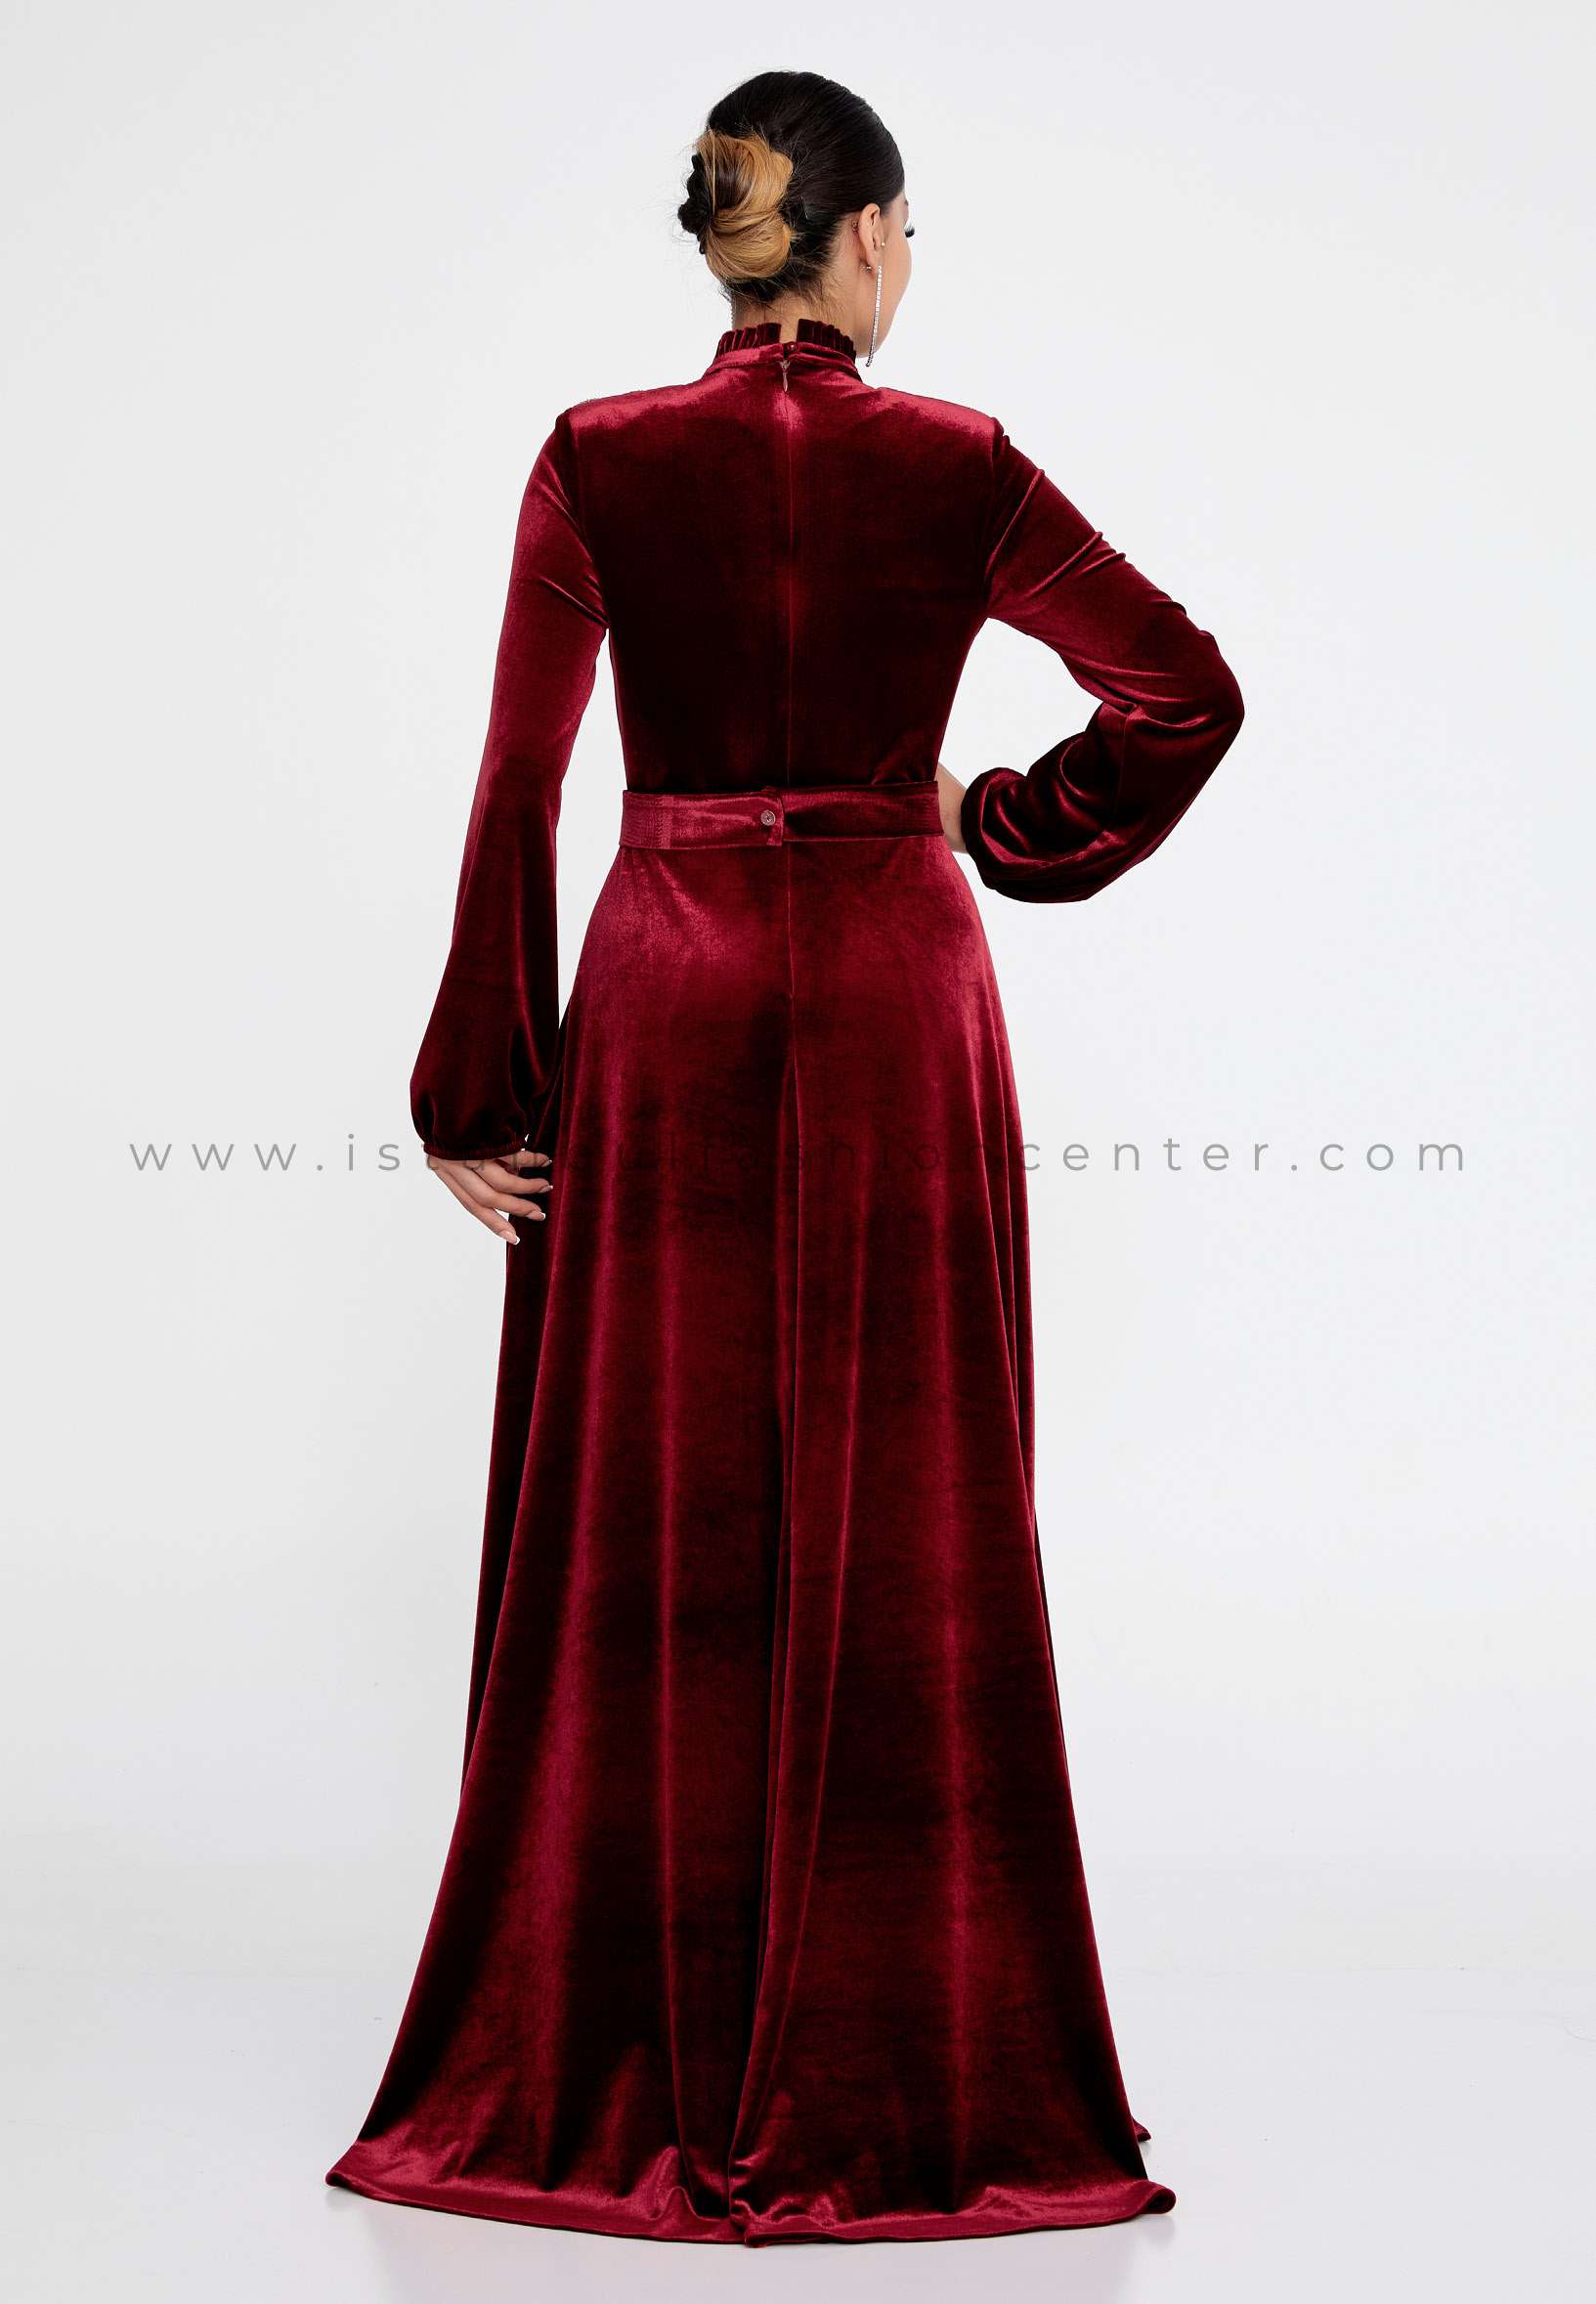  Elegant Velvet Dress for Women Long Sleeve Fall Long